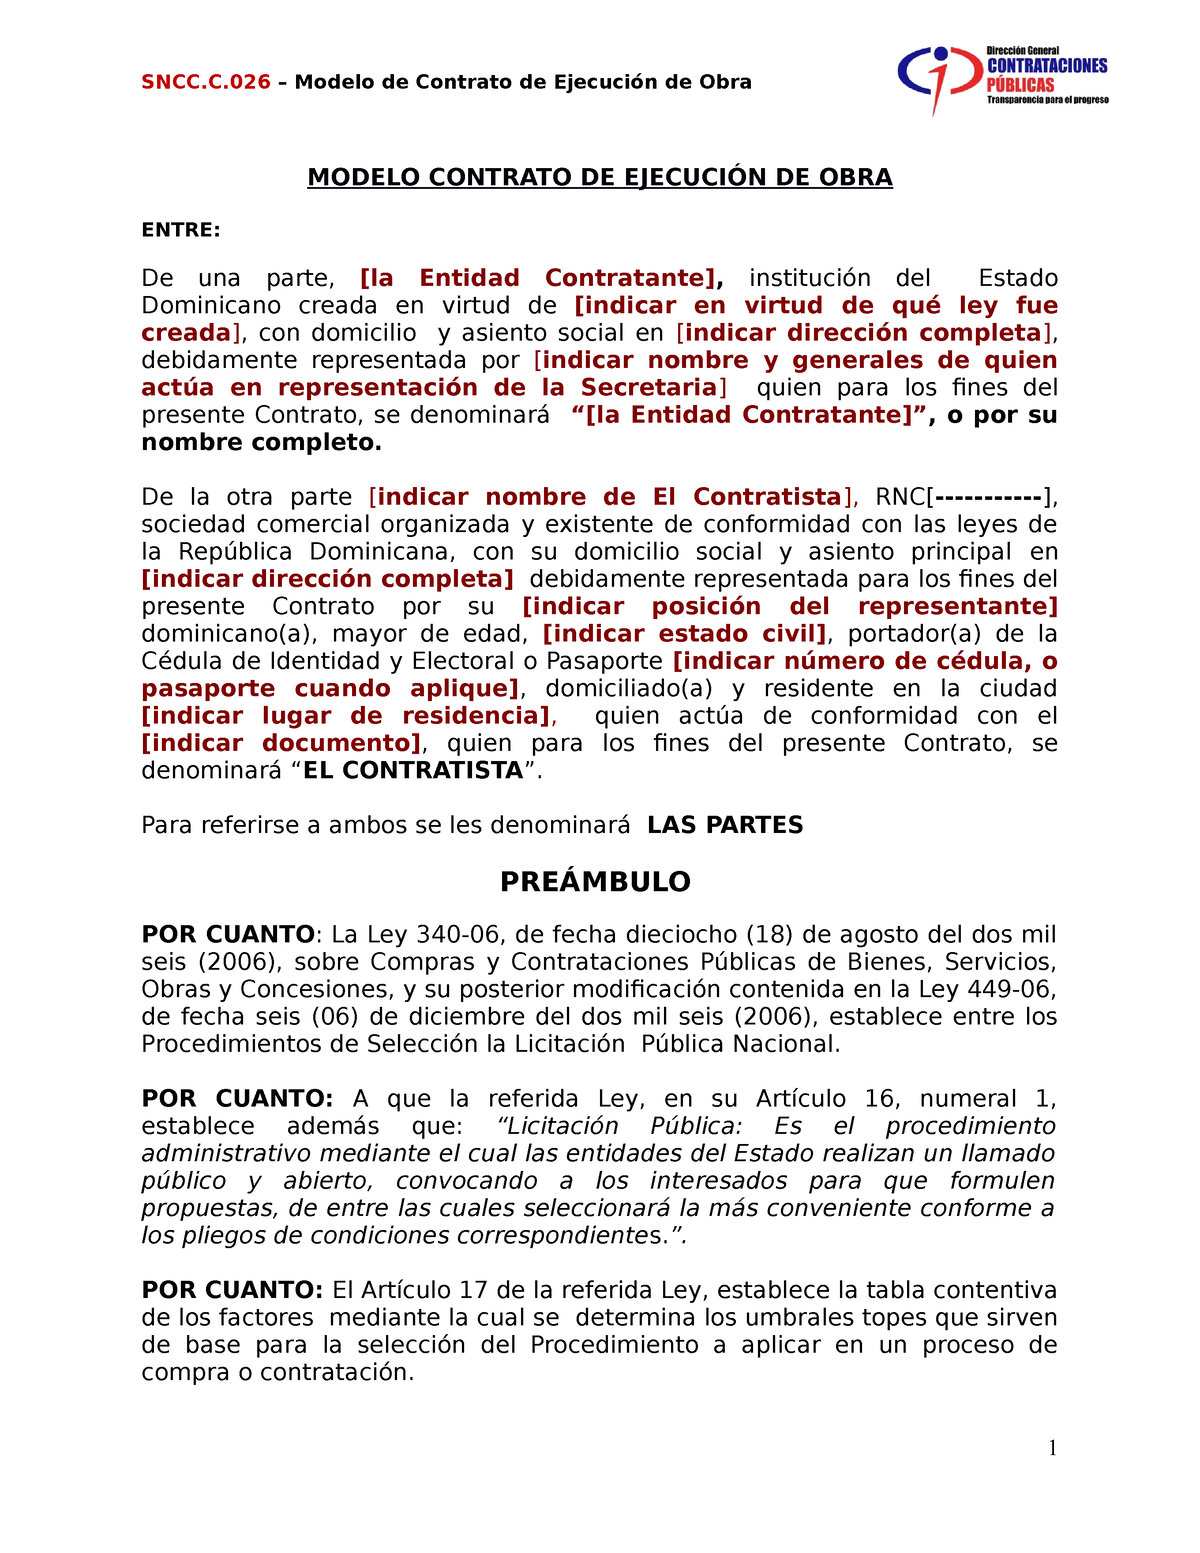 SNCC C026 Contrato Ejecucion de Obras - MODELO CONTRATO DE EJECUCIÓN DE  OBRA ENTRE: De una parte, - Studocu